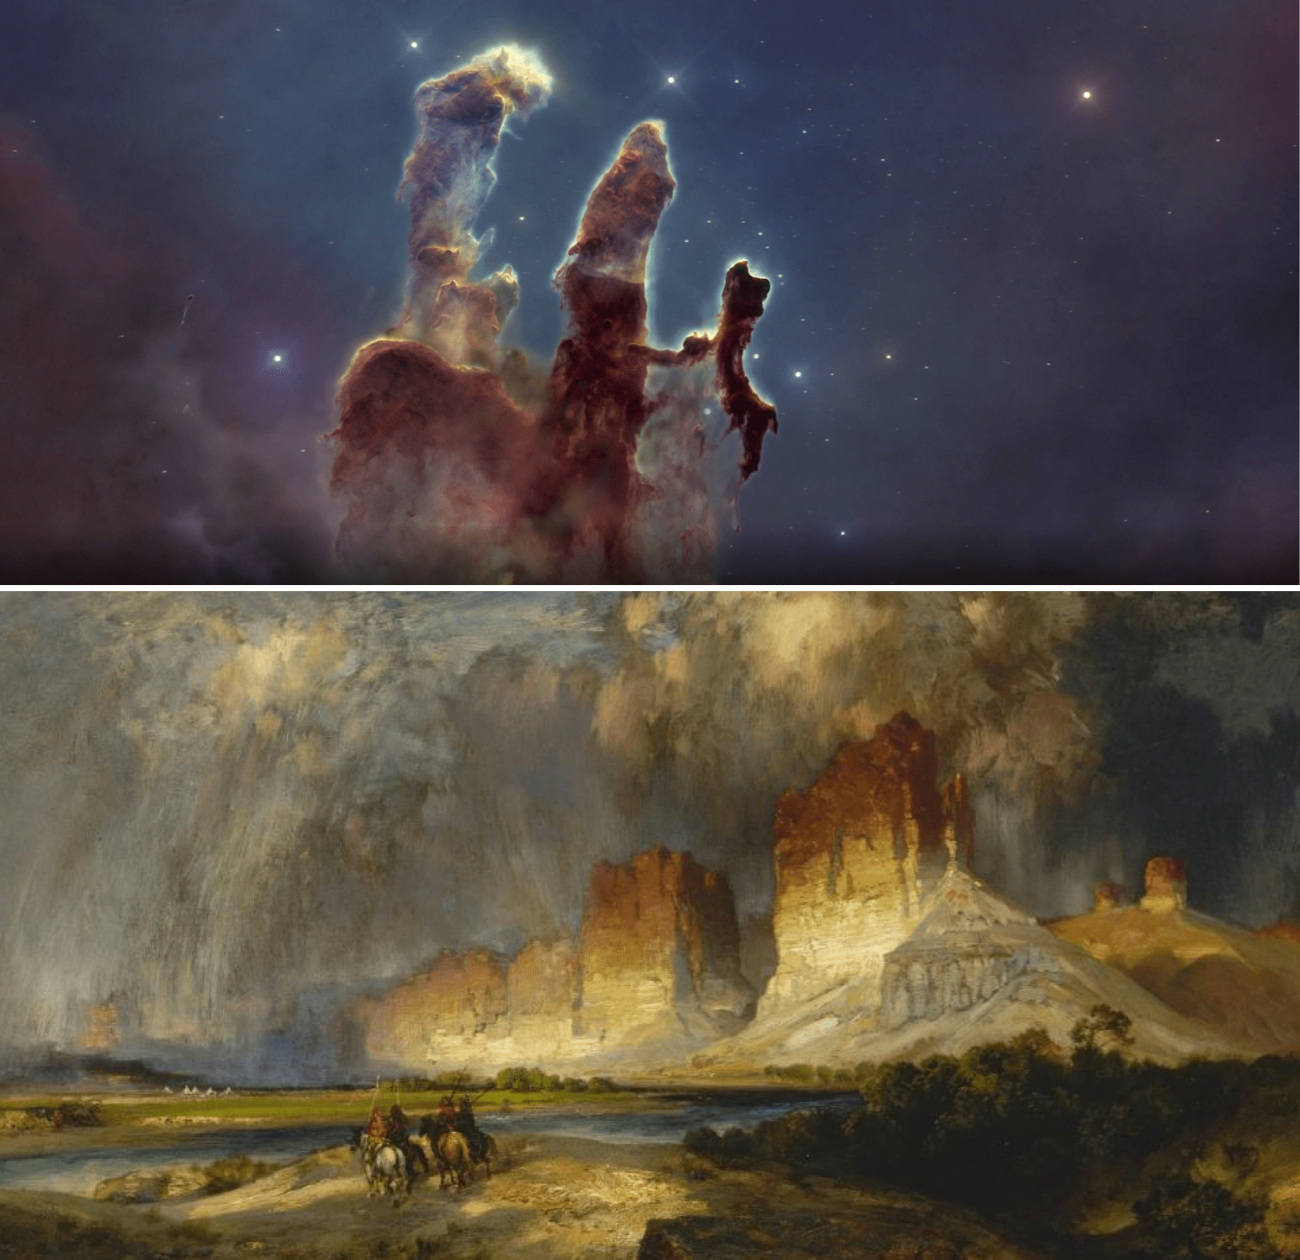 Los ‘Pilares de la Creación’, tomada por el telescopio Hubble y ‘Acantilados del río Colorado’ del artista Thomas Moran